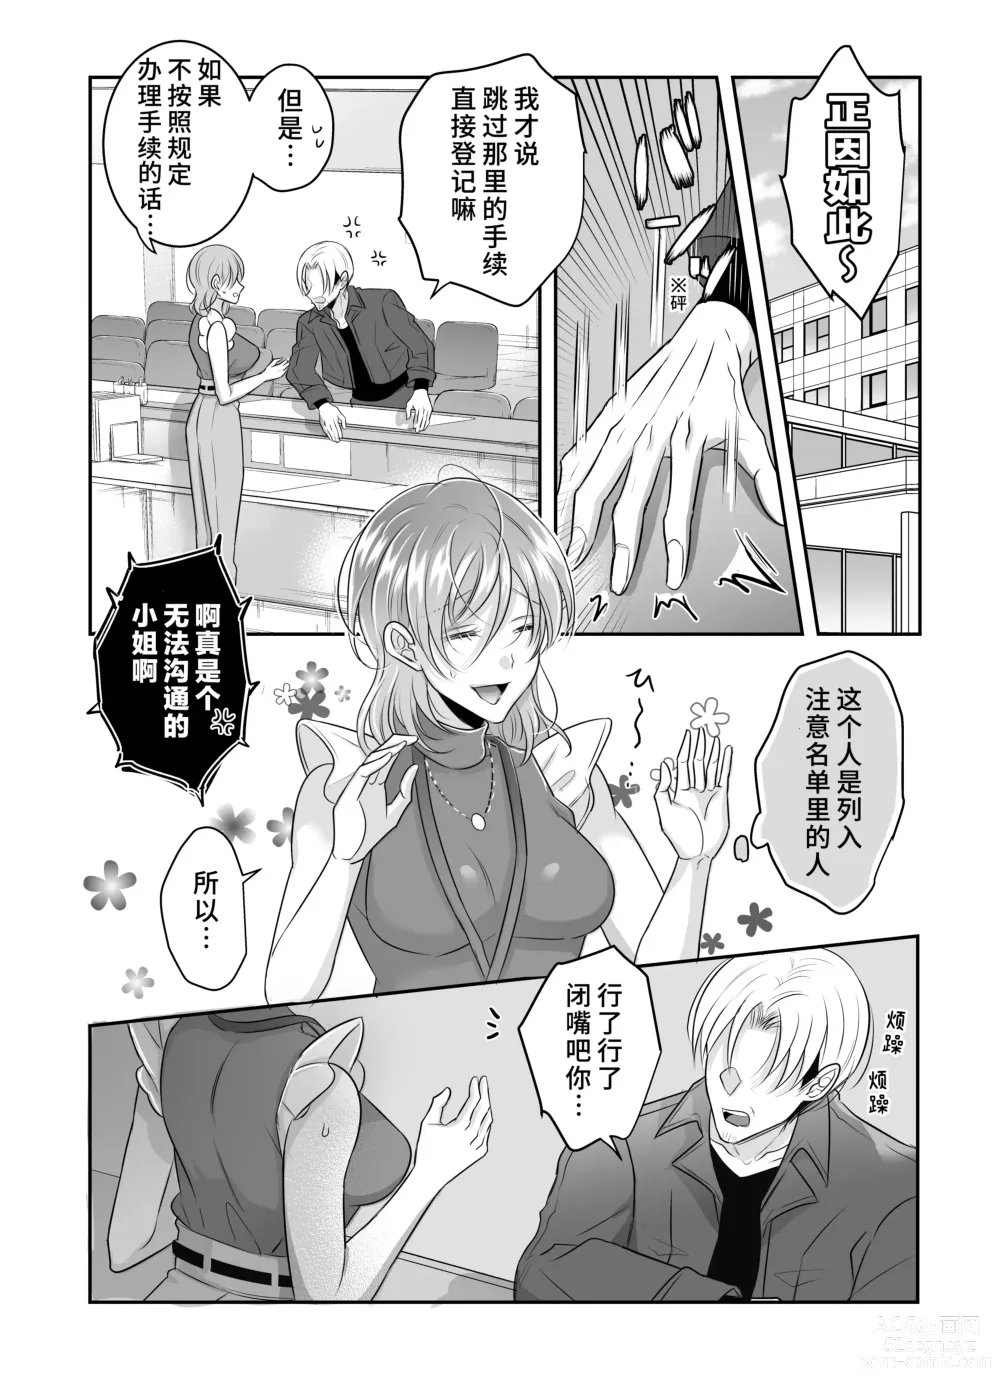 Page 4 of doujinshi 关于我的龙人同事发情期太过骇人这件事